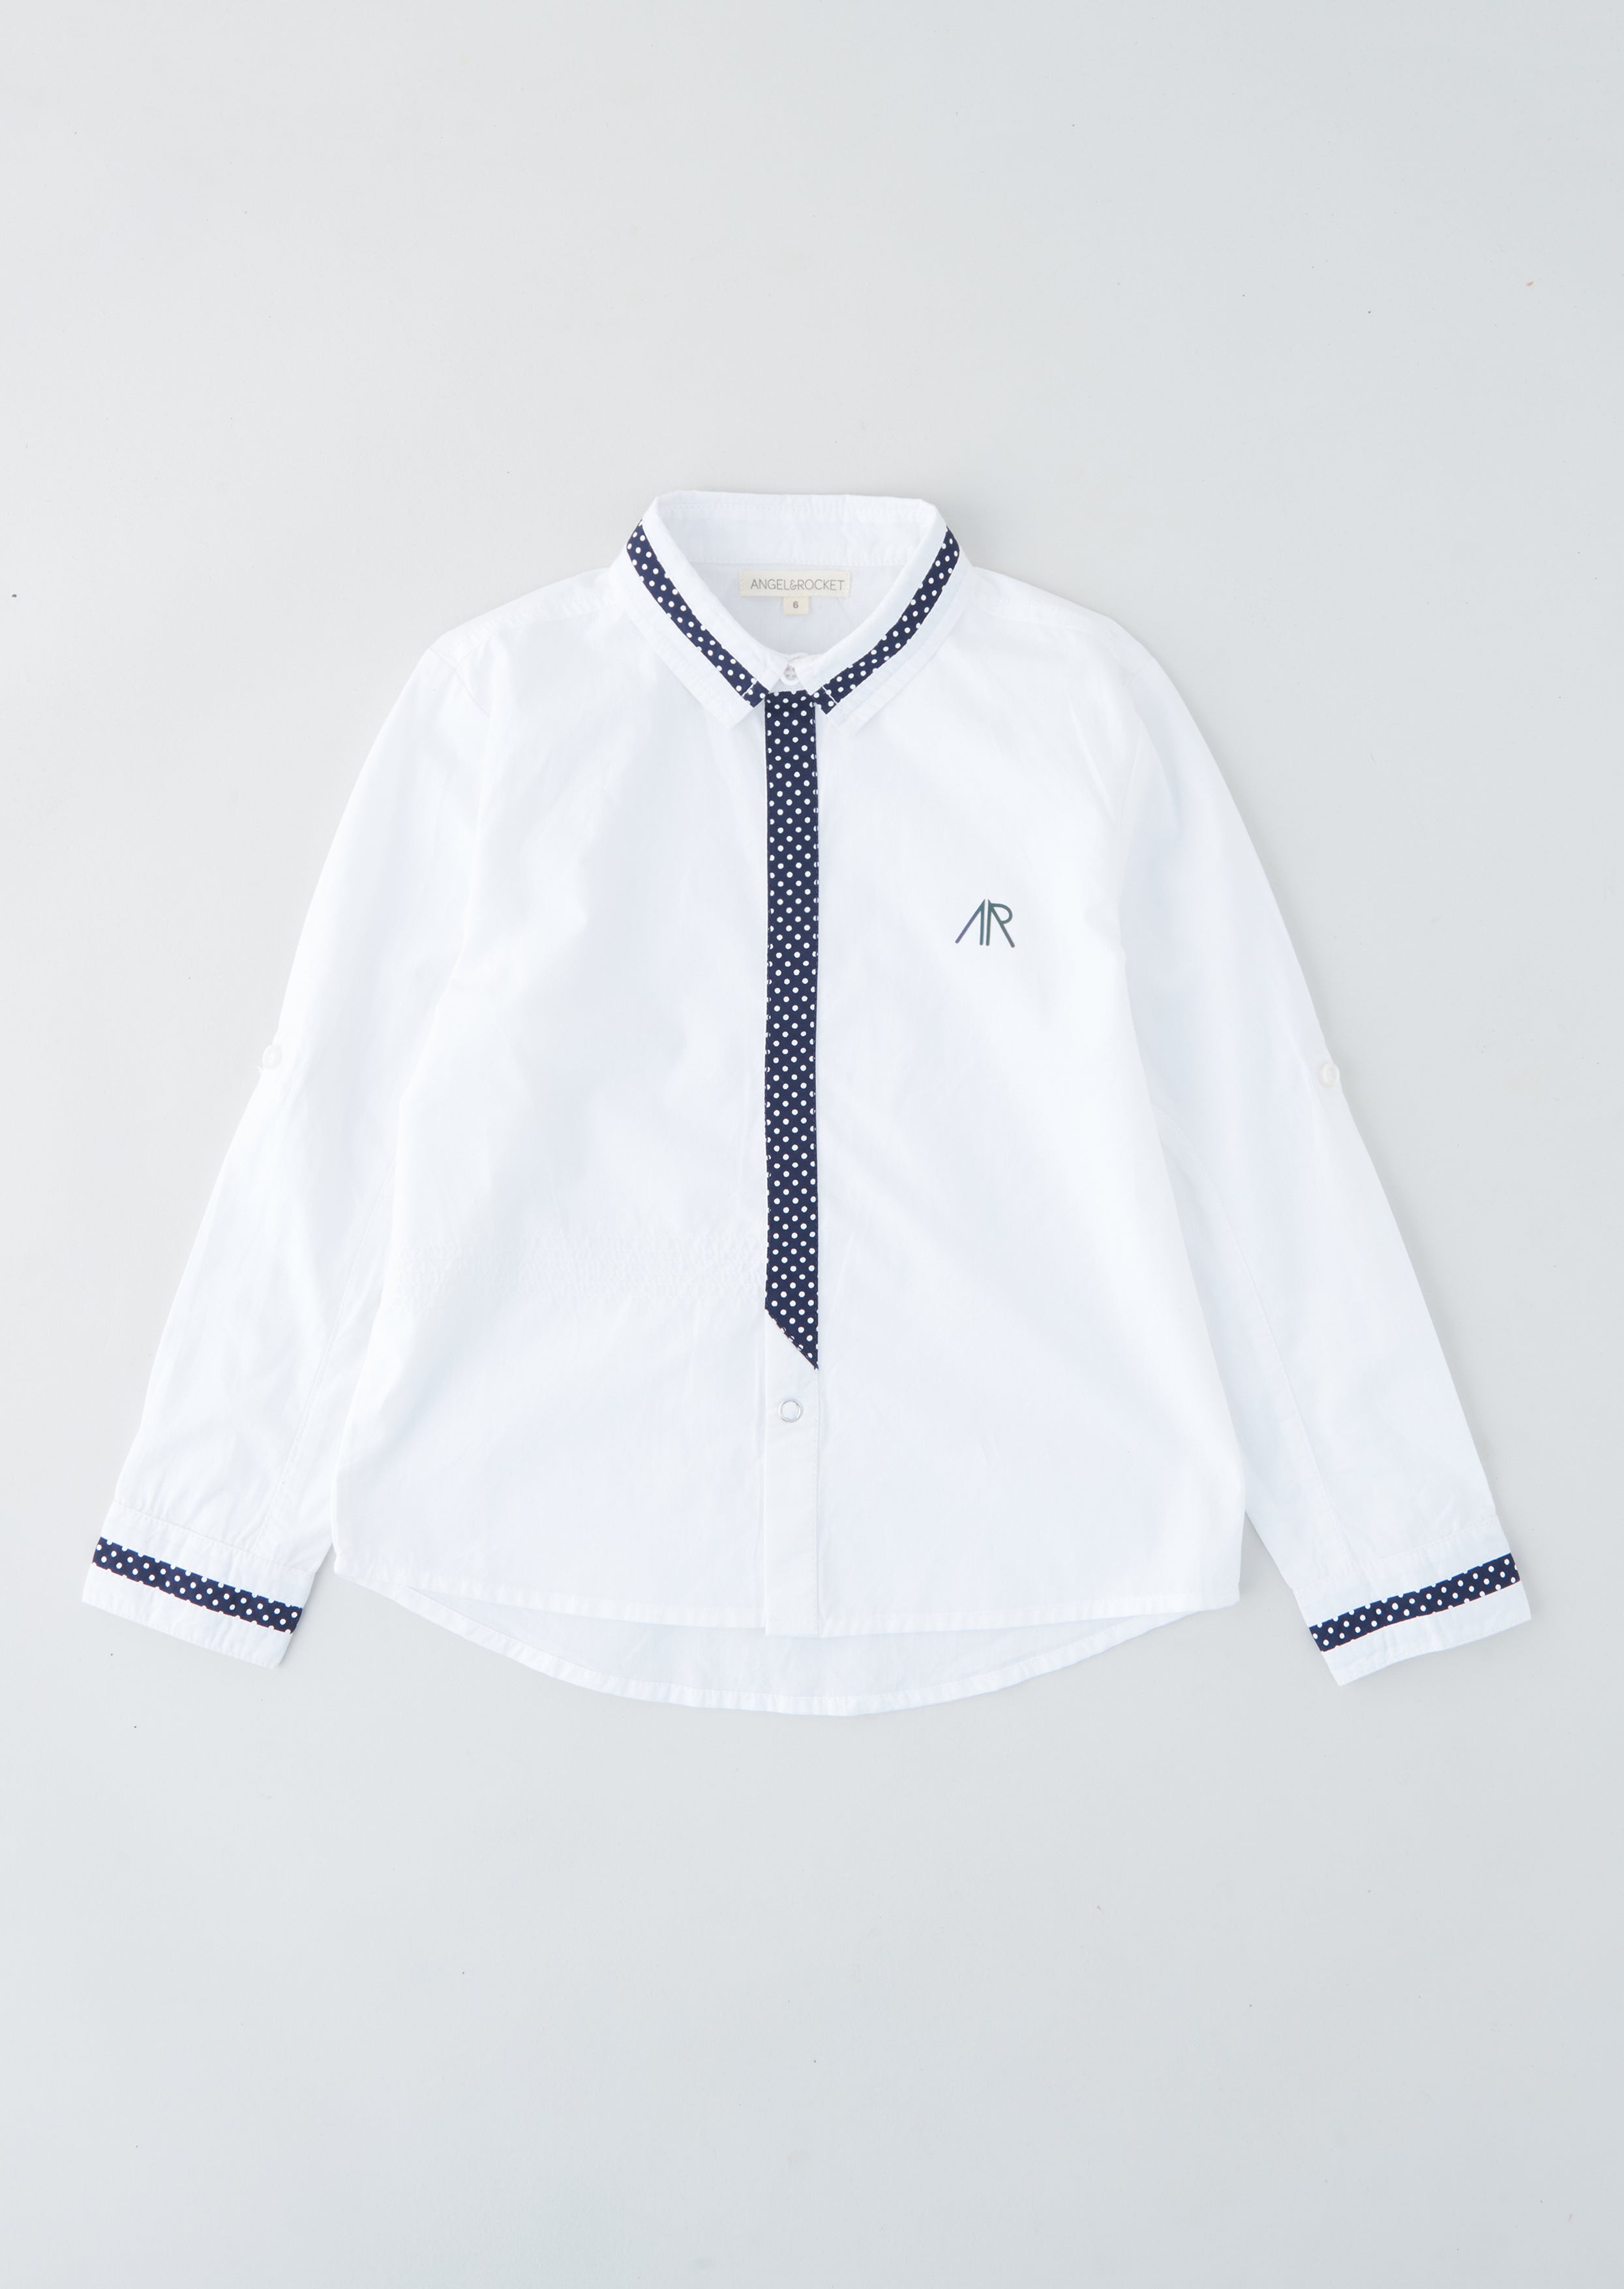 Boys Spot Trimmed Full Sleeves Cotton White Smart Shirt